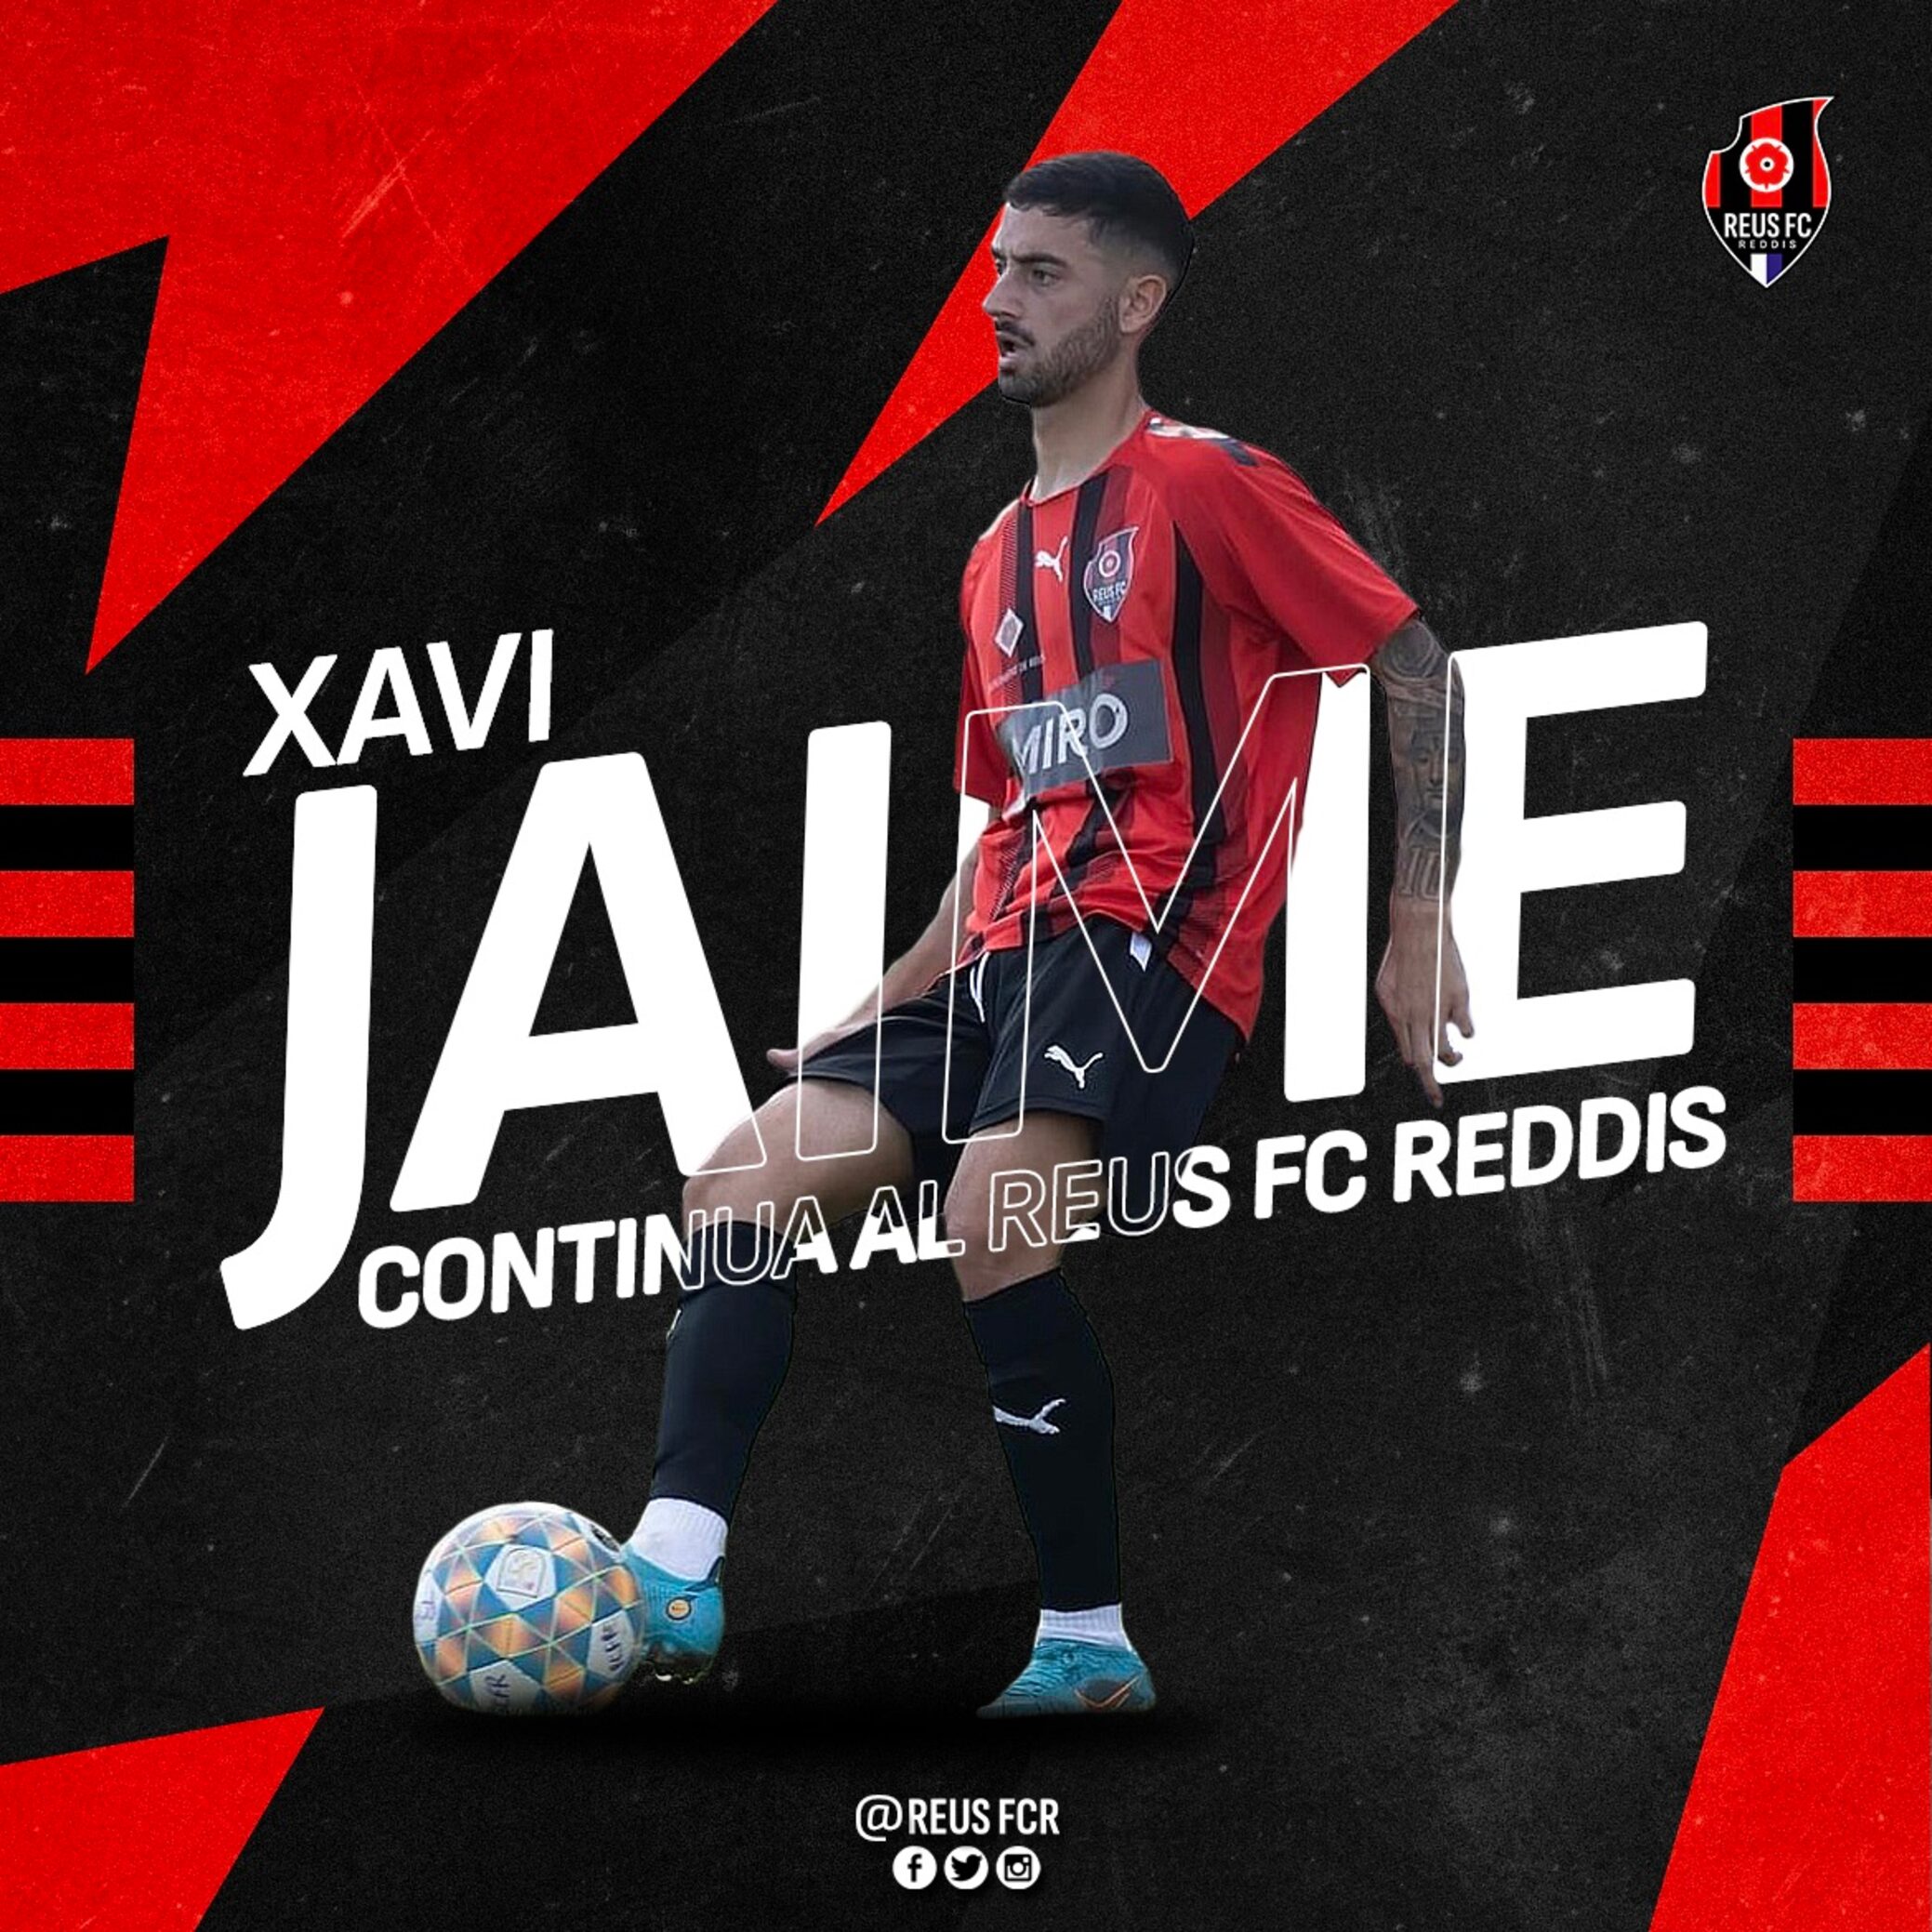 Xavi Jaime renova amb el Reus FC Reddis